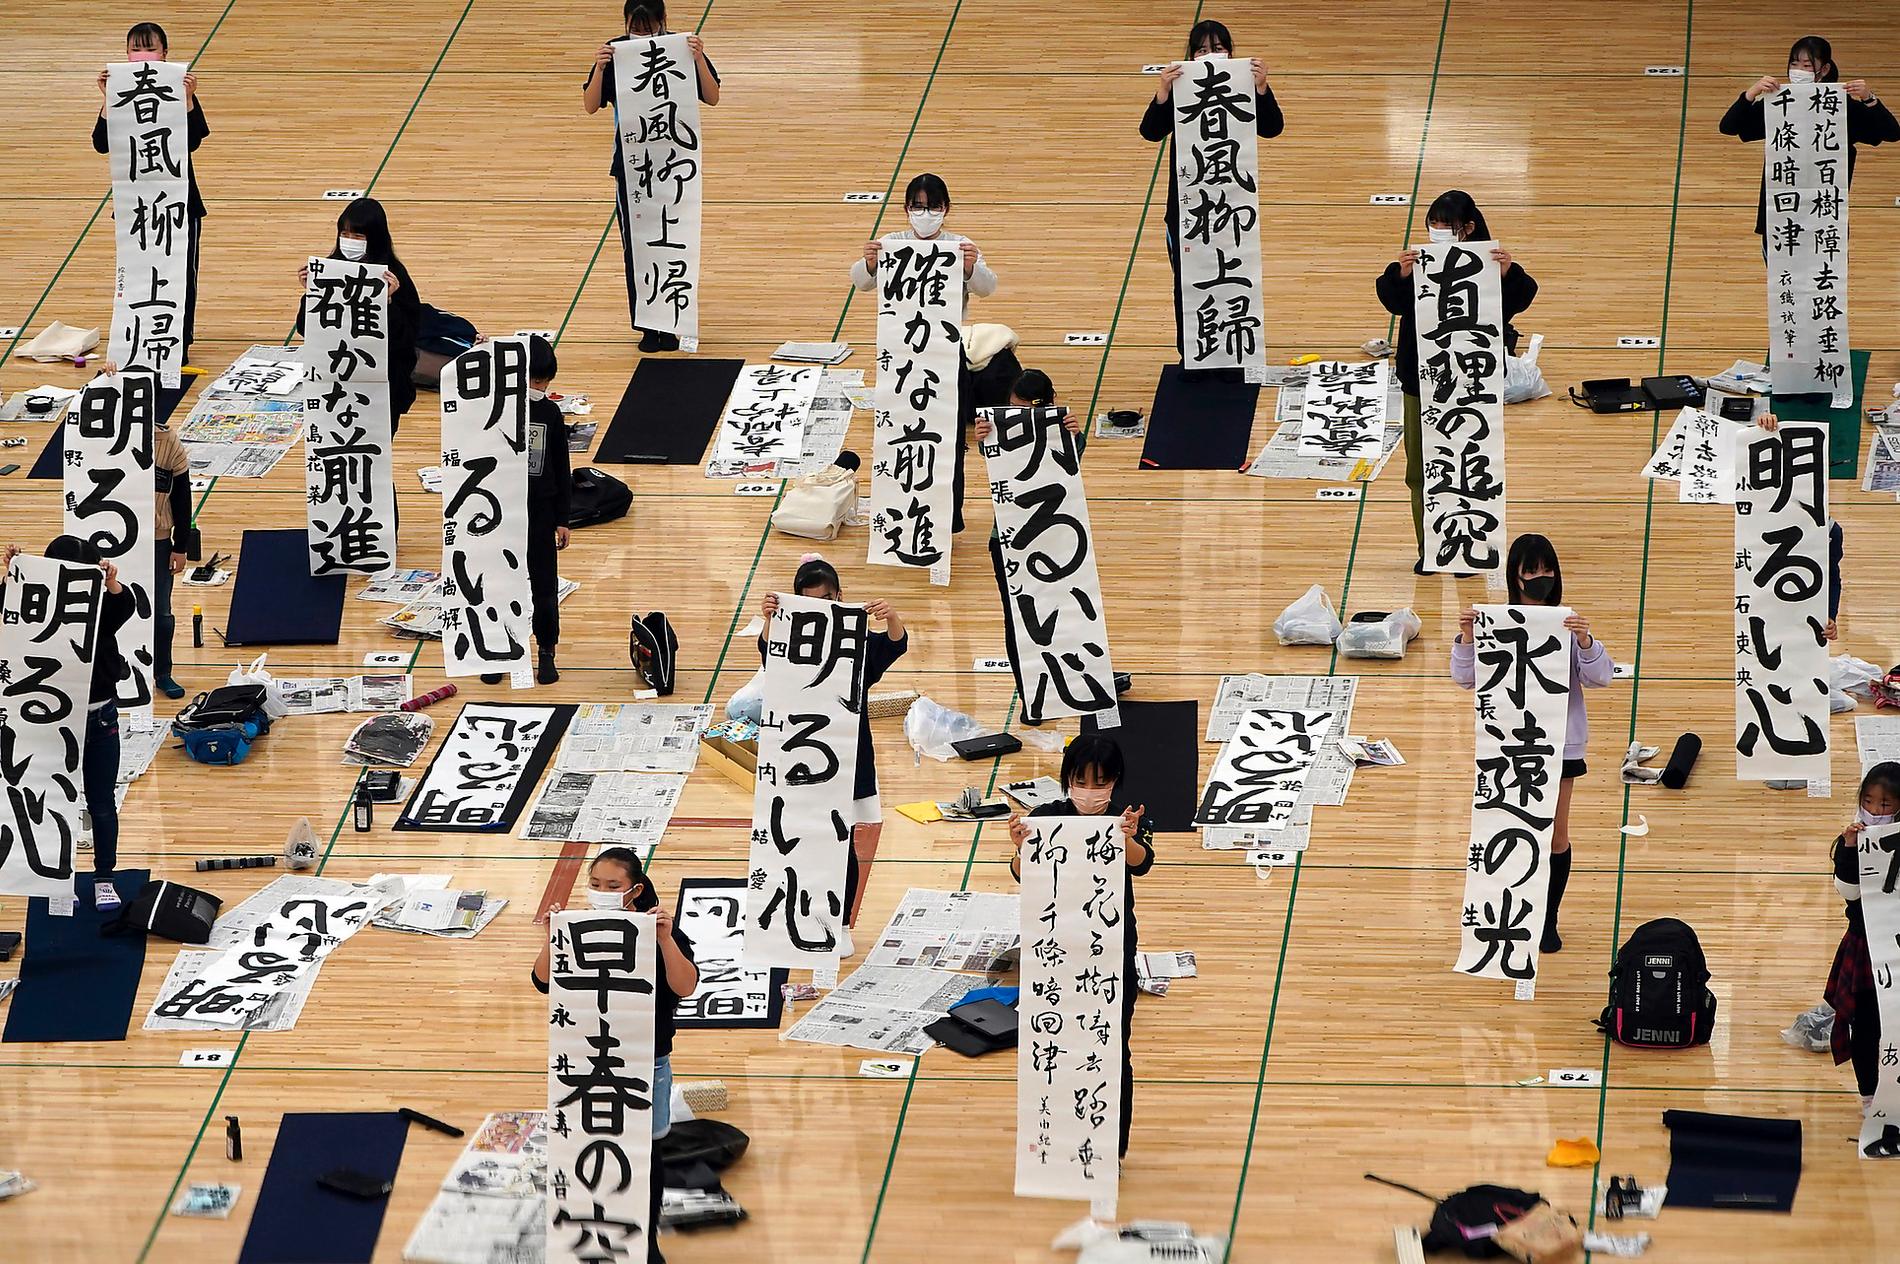 Kalligrafi är ett obligatoriskt ämne i skolan i Japan.